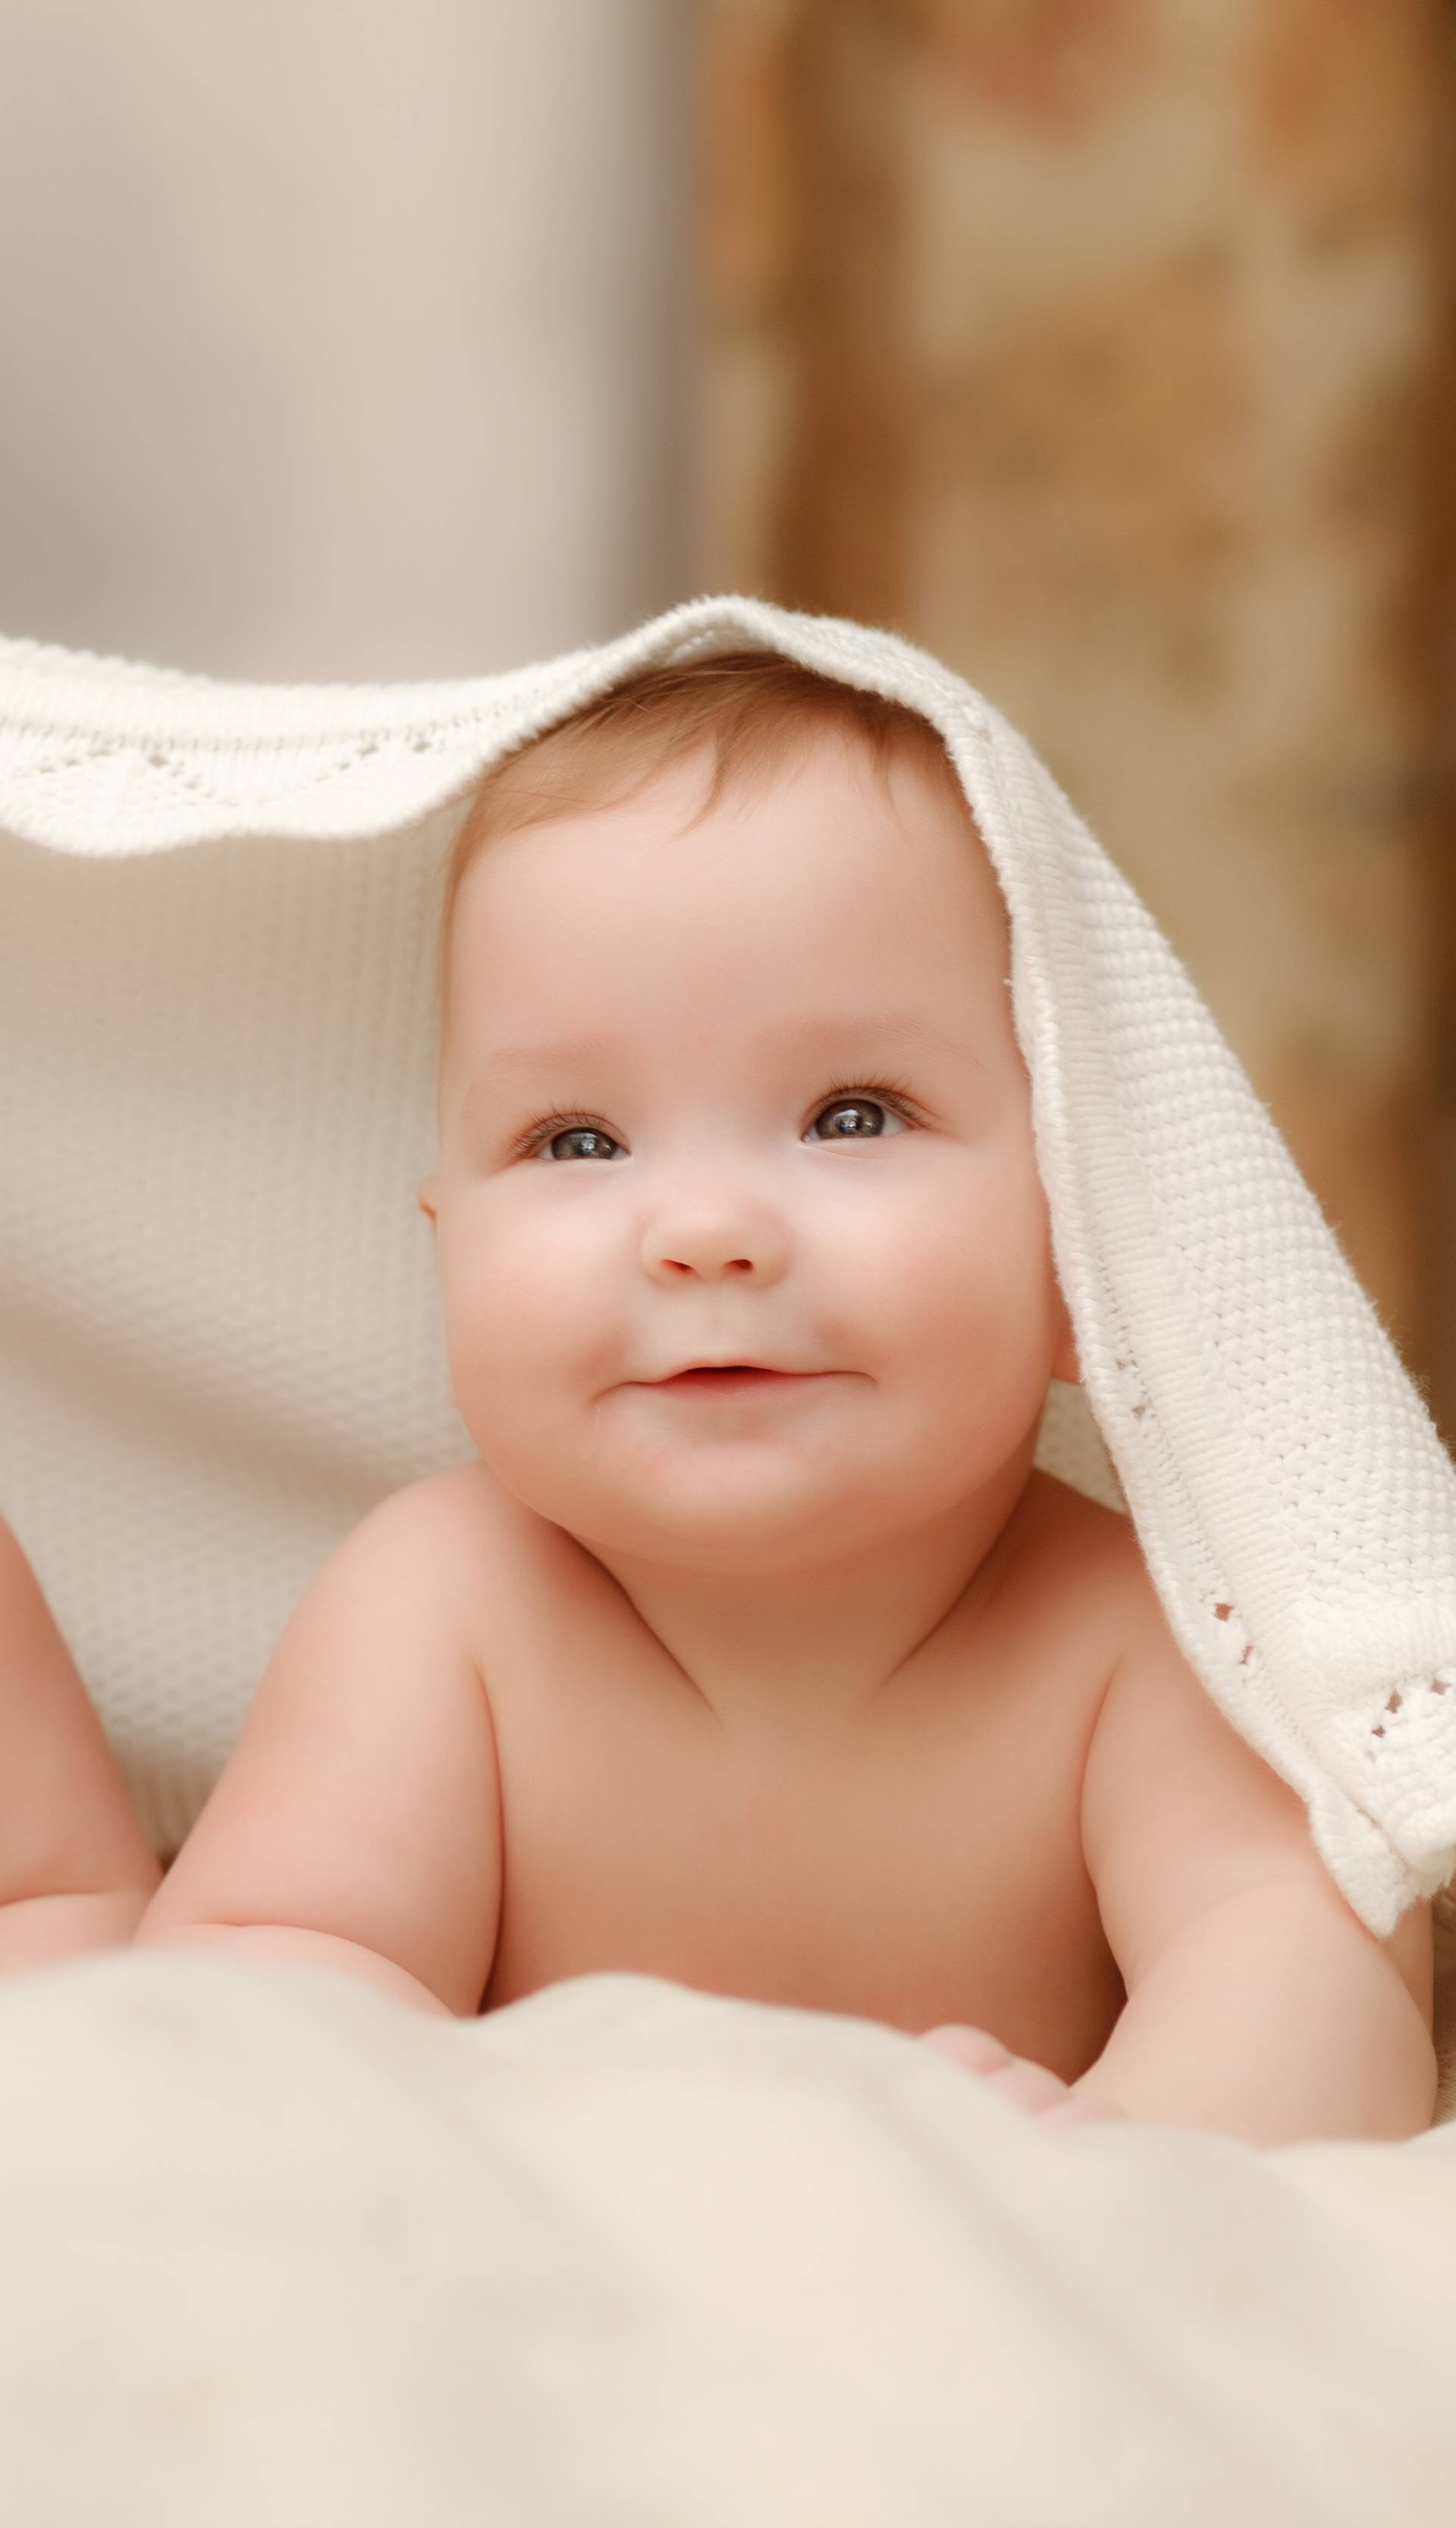 Evolucija: Bebe su neodoljive da bi se baš svi brinuli o njima